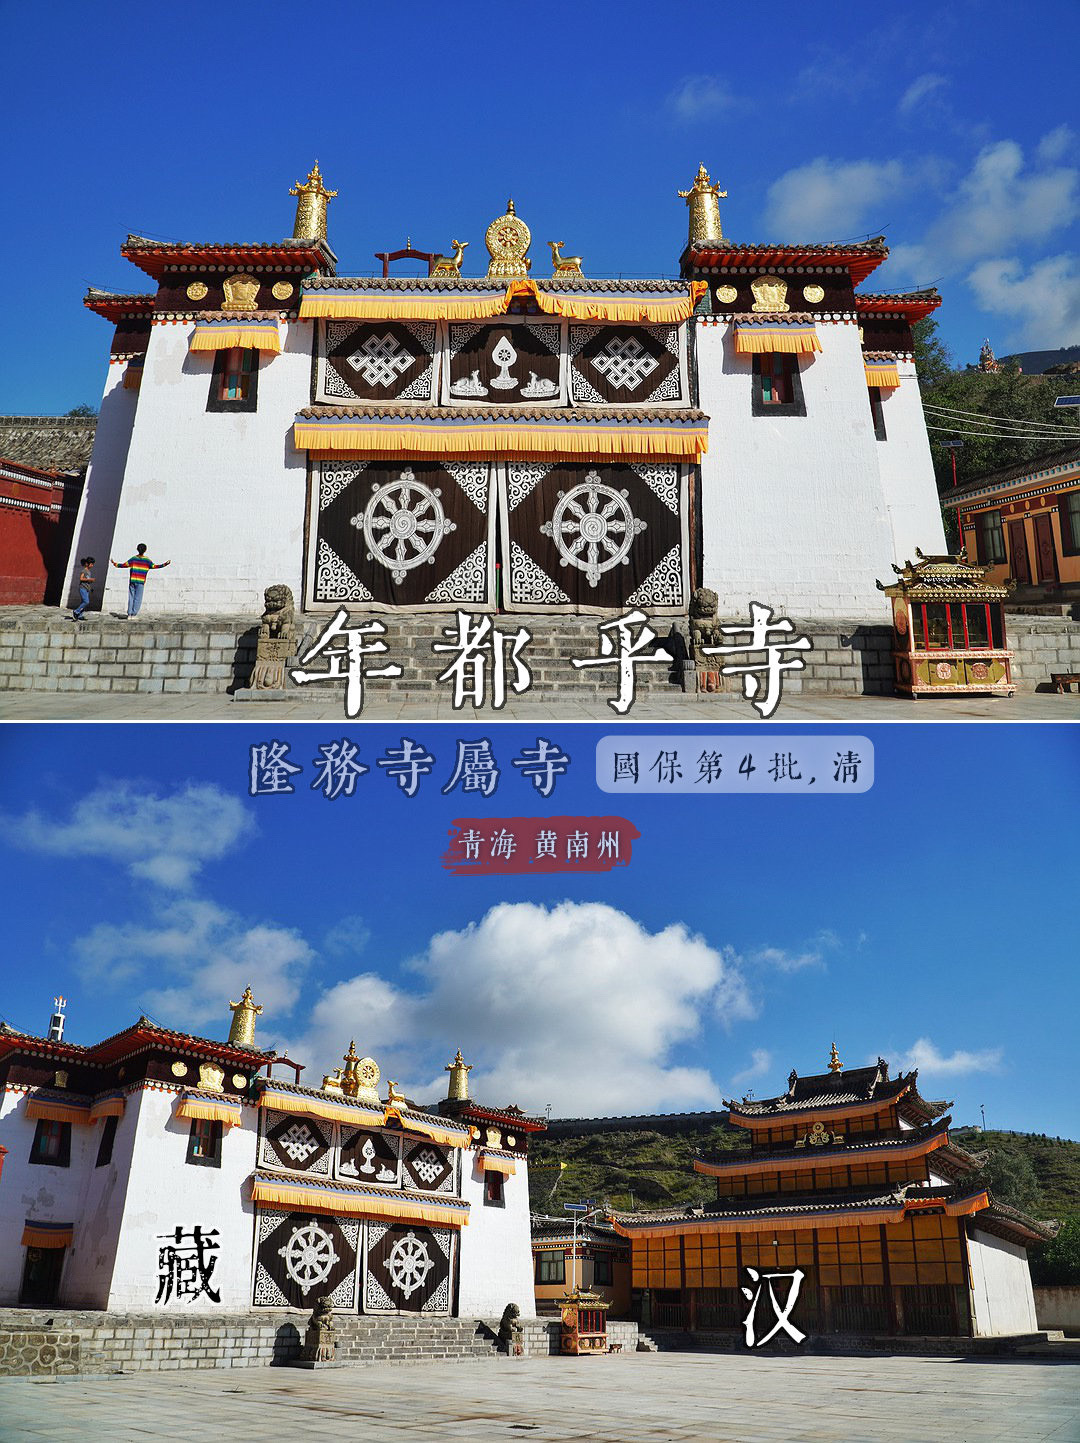 这座寺庙，因何兼有汉藏两种建筑风格？又因何成为隆务寺之属寺